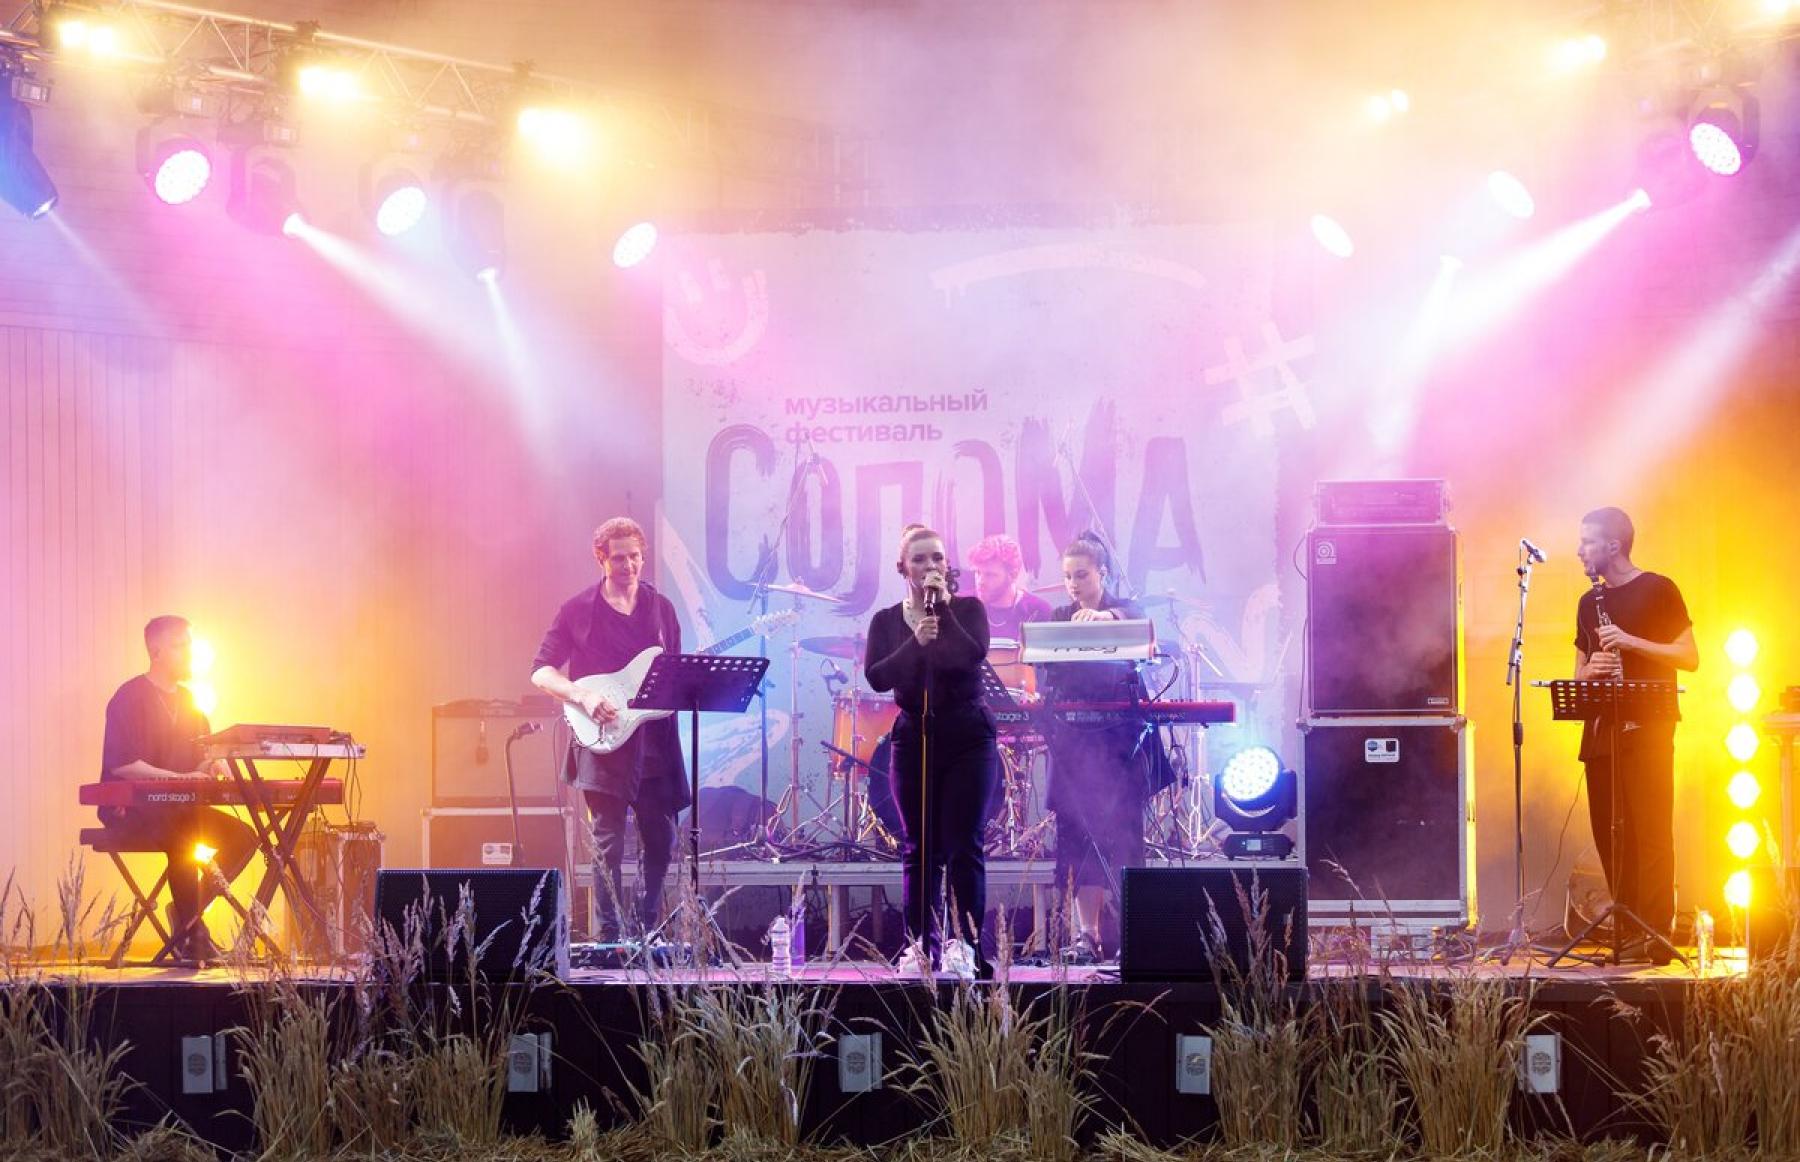 Музыкальный фестиваль «Солома» объявил даты и площадки